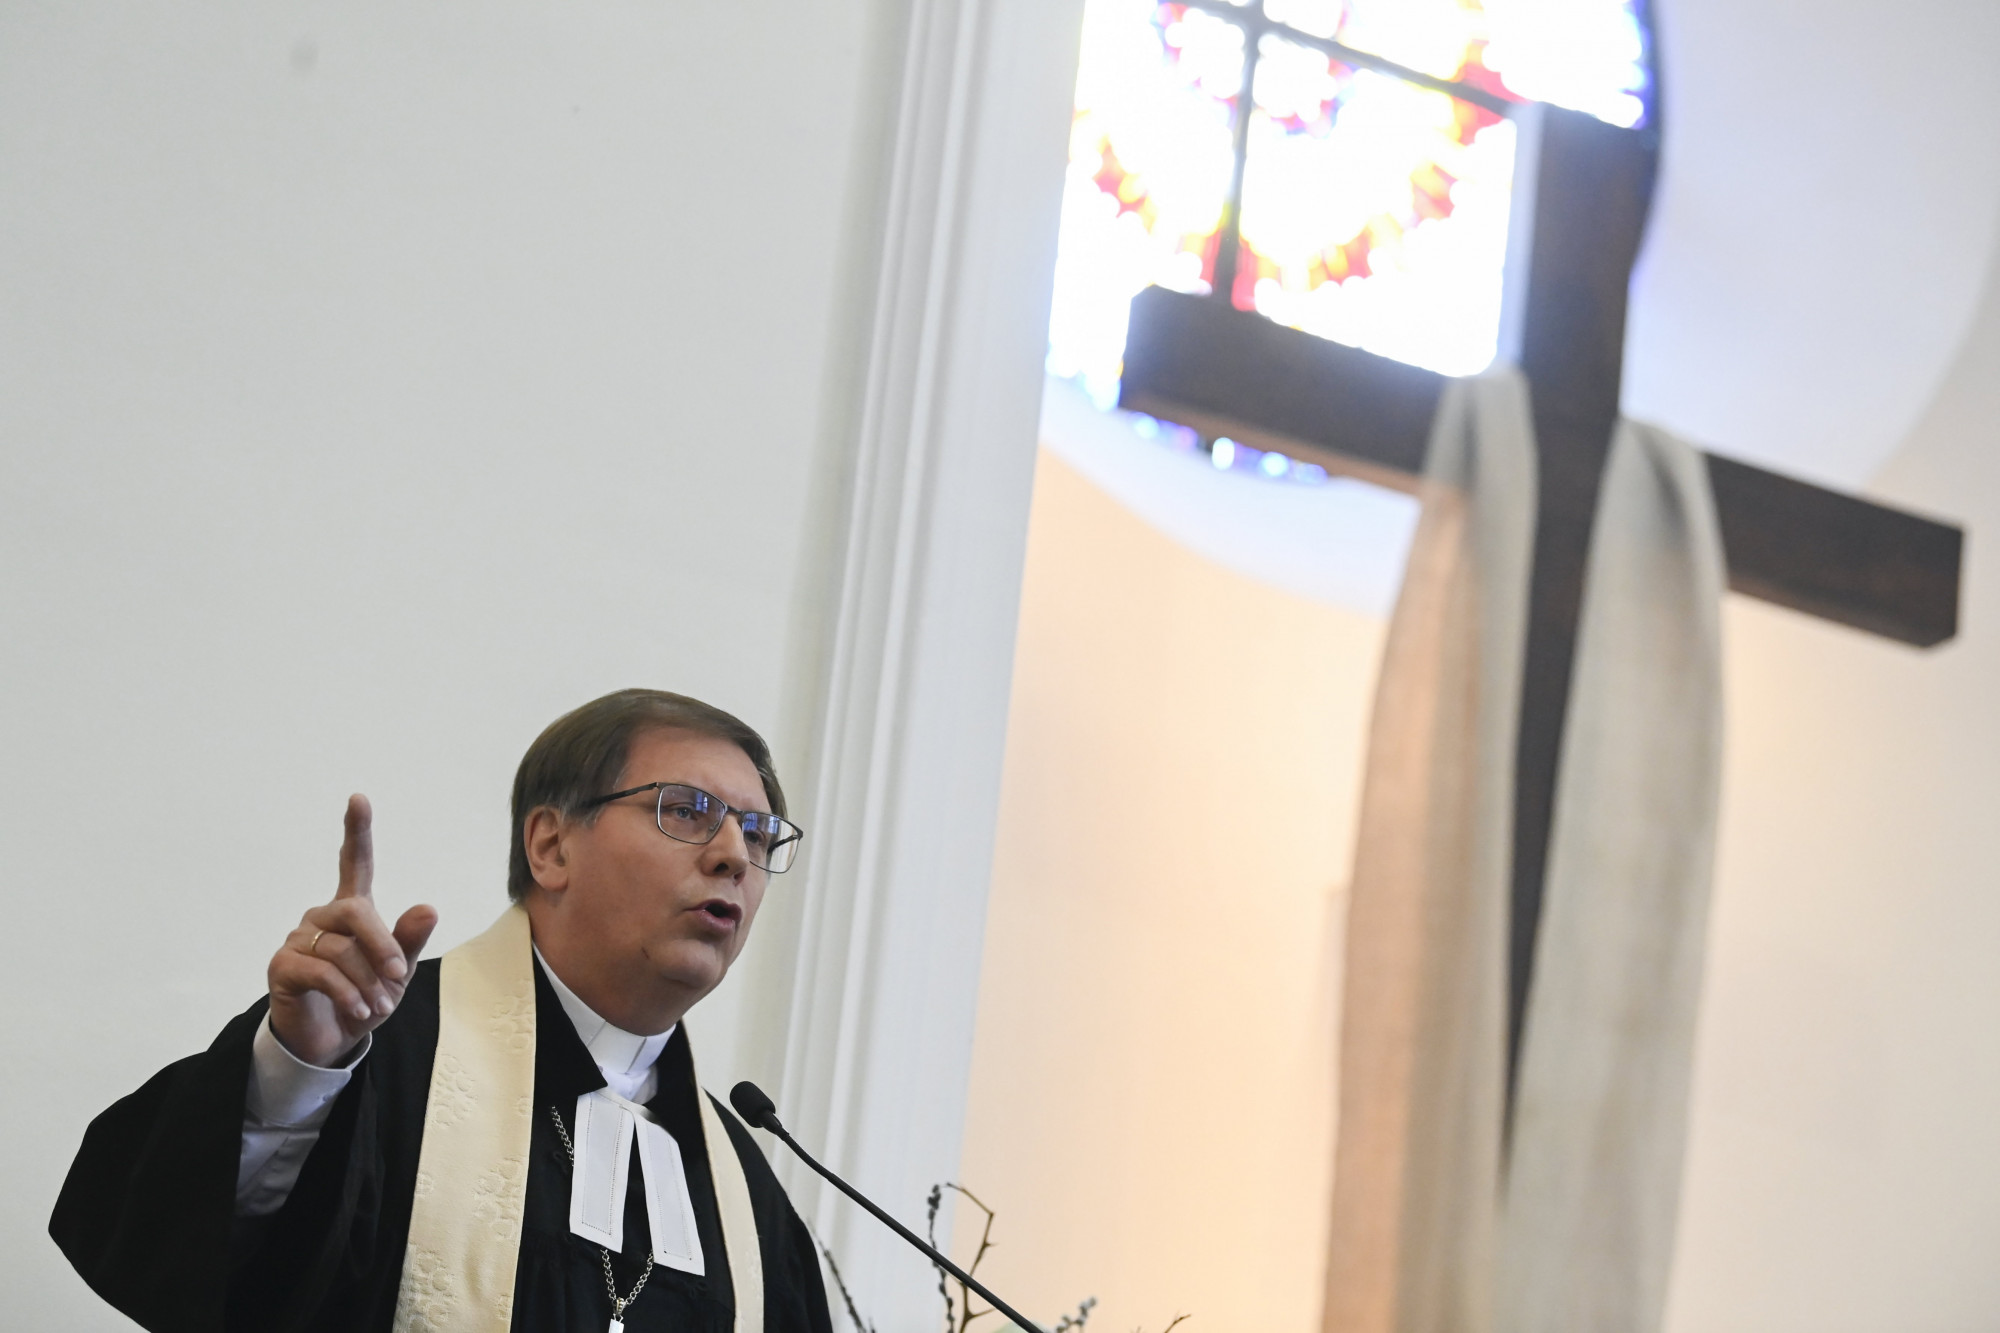 Fabiny Tamás evangélikus püspök: Egy magát kereszténynek valló politikusnak még inkább tilos a lopás, a sikkasztás, feleségének megcsalása, mint a többieknek